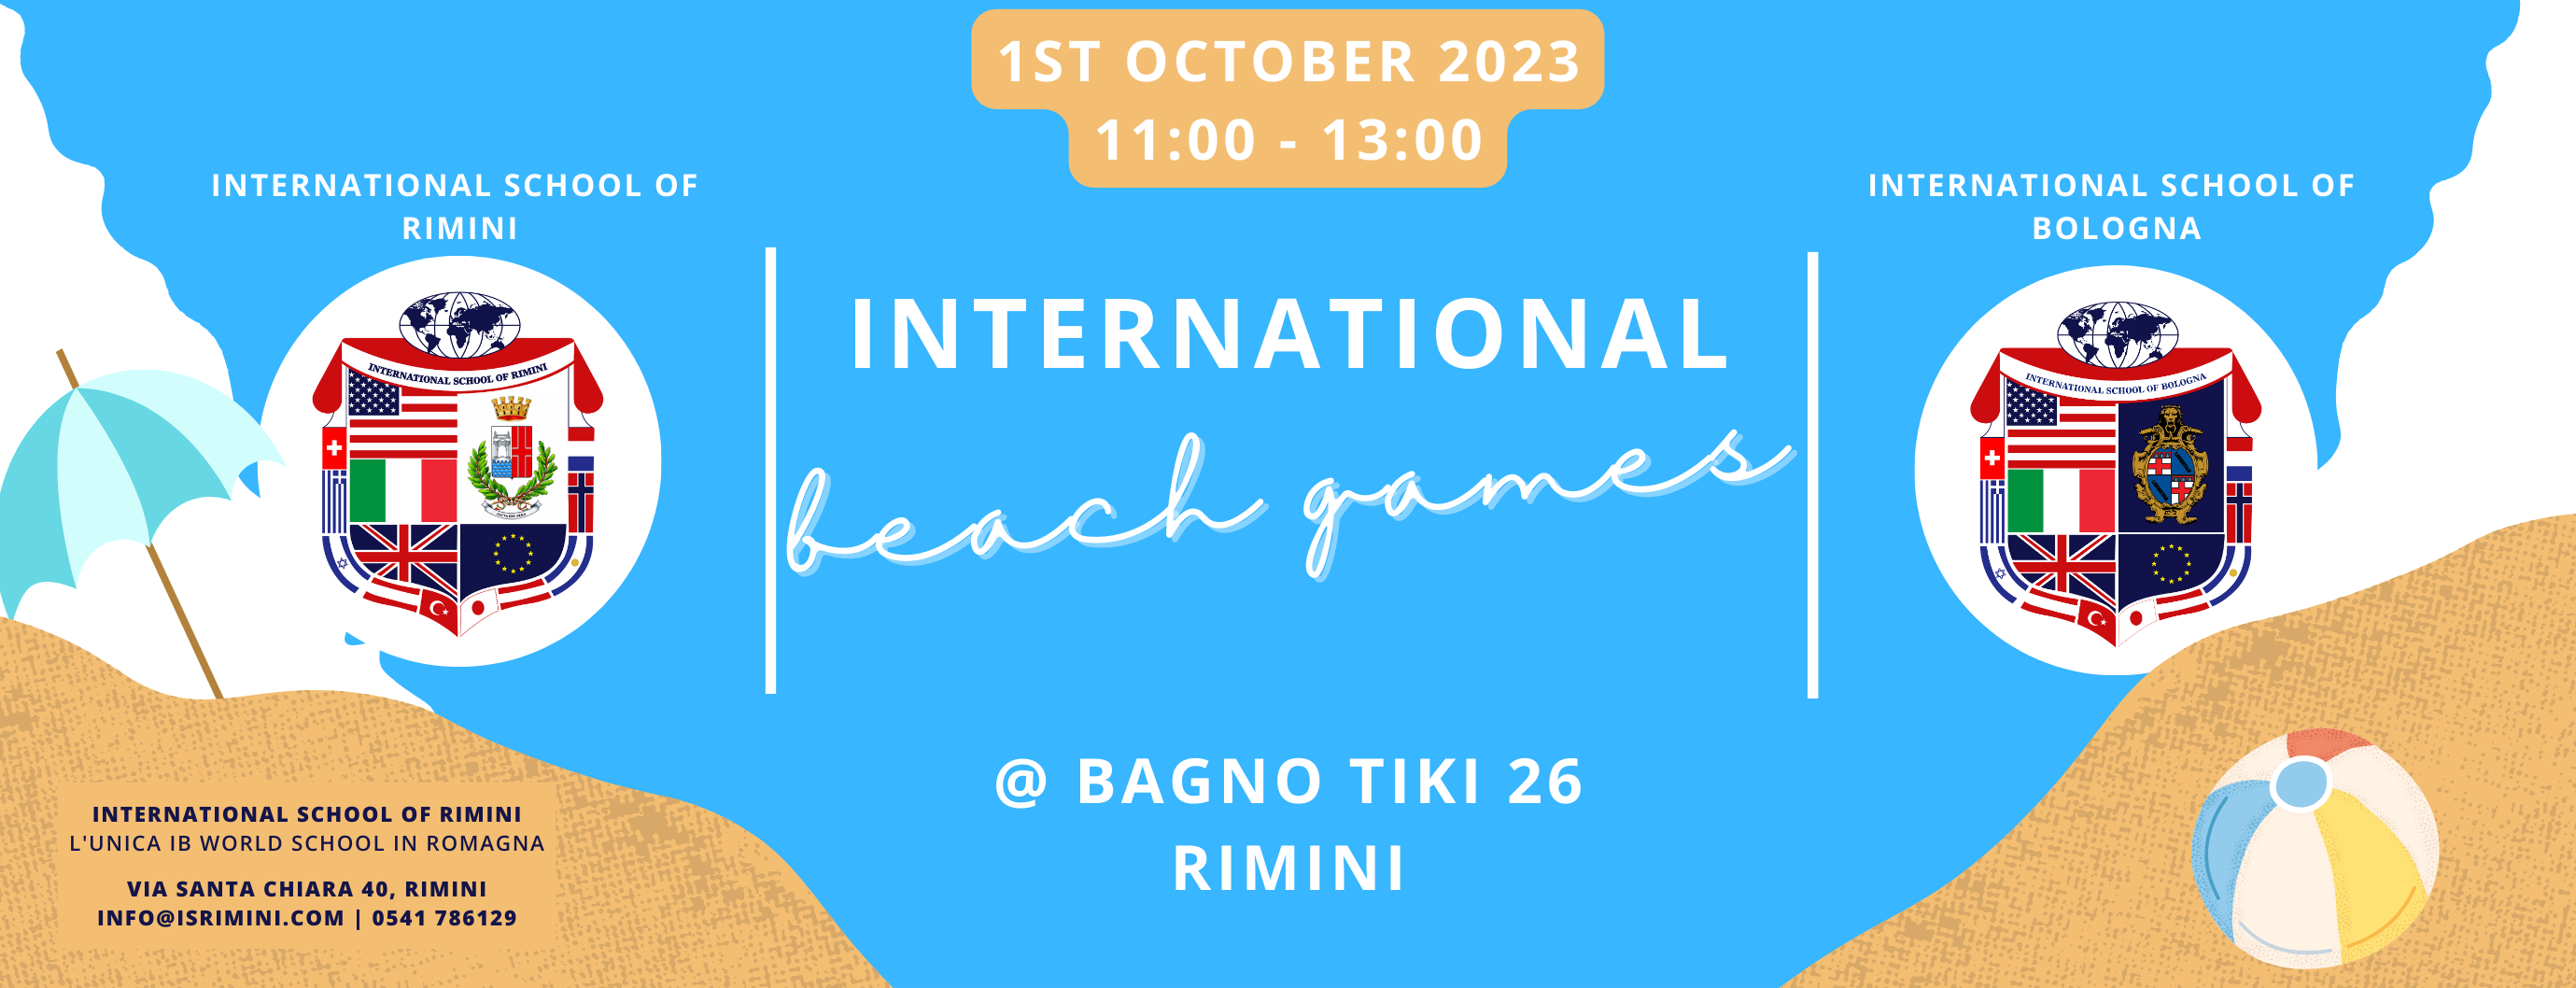 International School of Rimini presenta la seconda edizione degli International Beach Games